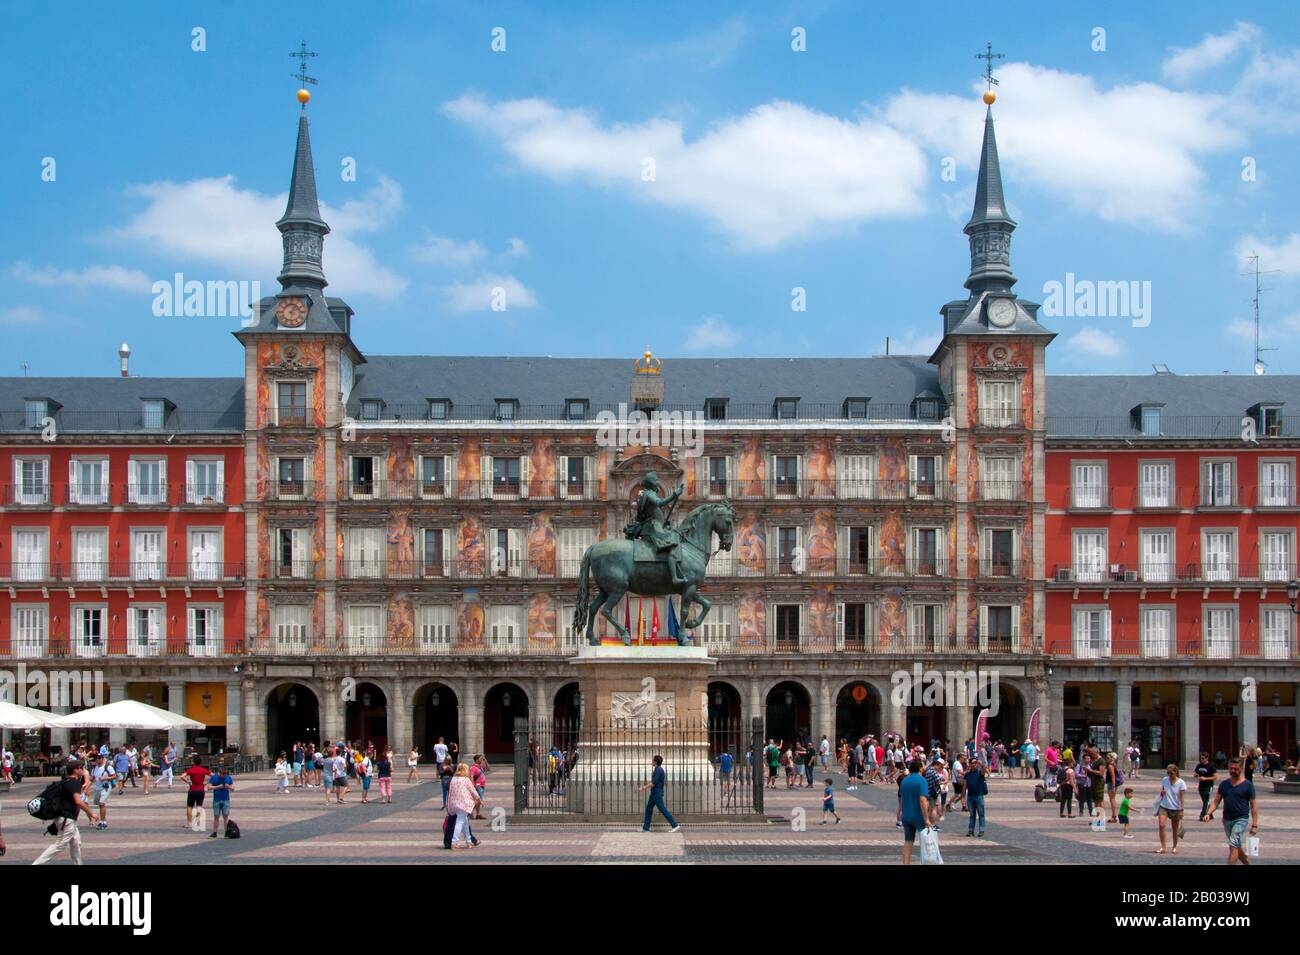 Philip III (14 avril 1578 – 31 mars 1621) était roi d'Espagne. Il fut aussi, comme Philippe II, roi du Portugal, Naples, Sicile et Sardaigne et duc de Milan de 1598 à sa mort. La Plaza Mayor a été construite pour la première fois (1580–1619) sous le règne de Philippe III. La plaza telle que nous la voyons aujourd'hui était l'œuvre de l'architecte espagnol Juan de Villanueva (1739 - 1811) qui a reconstruit la plaza en 1790. Banque D'Images